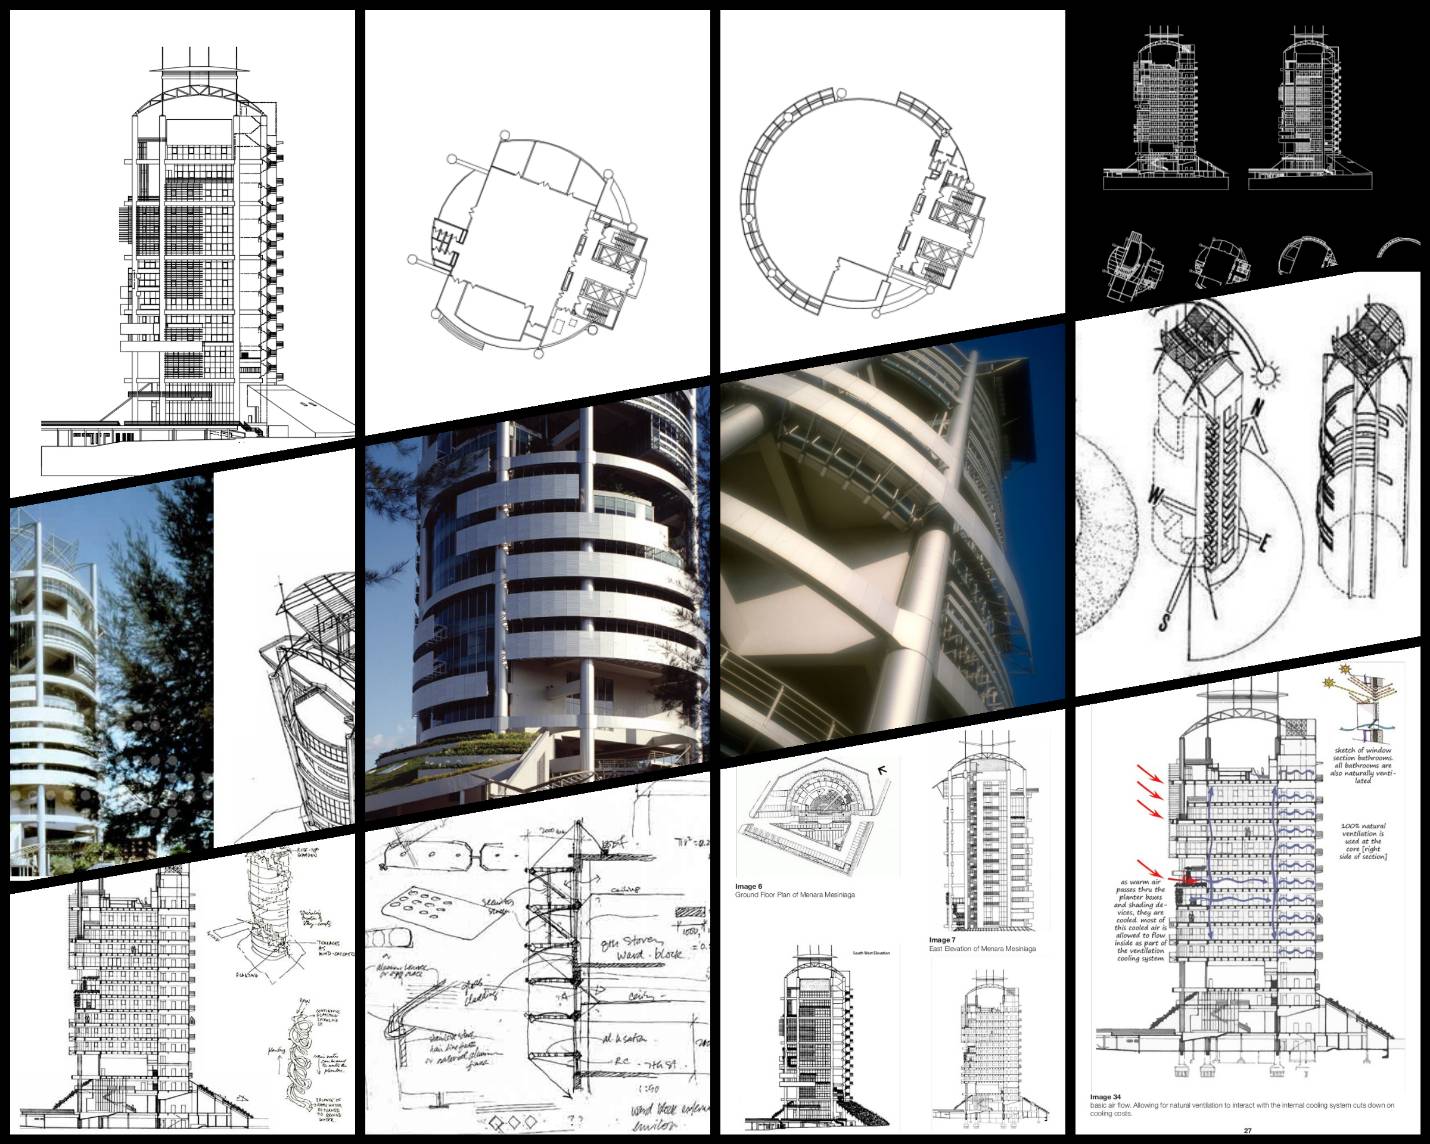 【世界知名建築案例研究CAD設計施工圖】Mesiniaga Tower-Ken Yeang